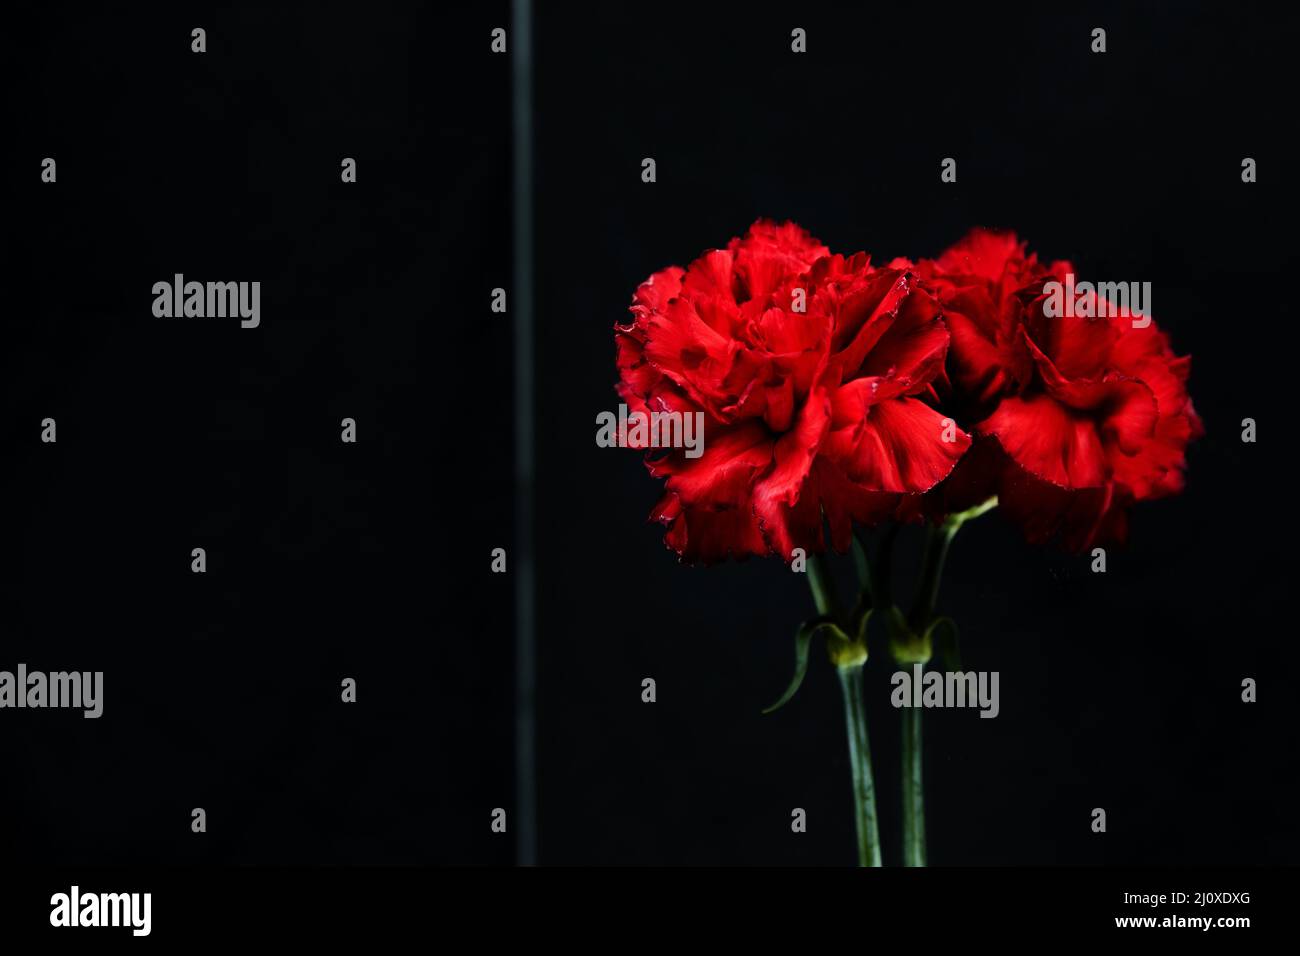 Gros plan rouge carnation fleur verre réfléchissant. Concept de photo de haute qualité Banque D'Images